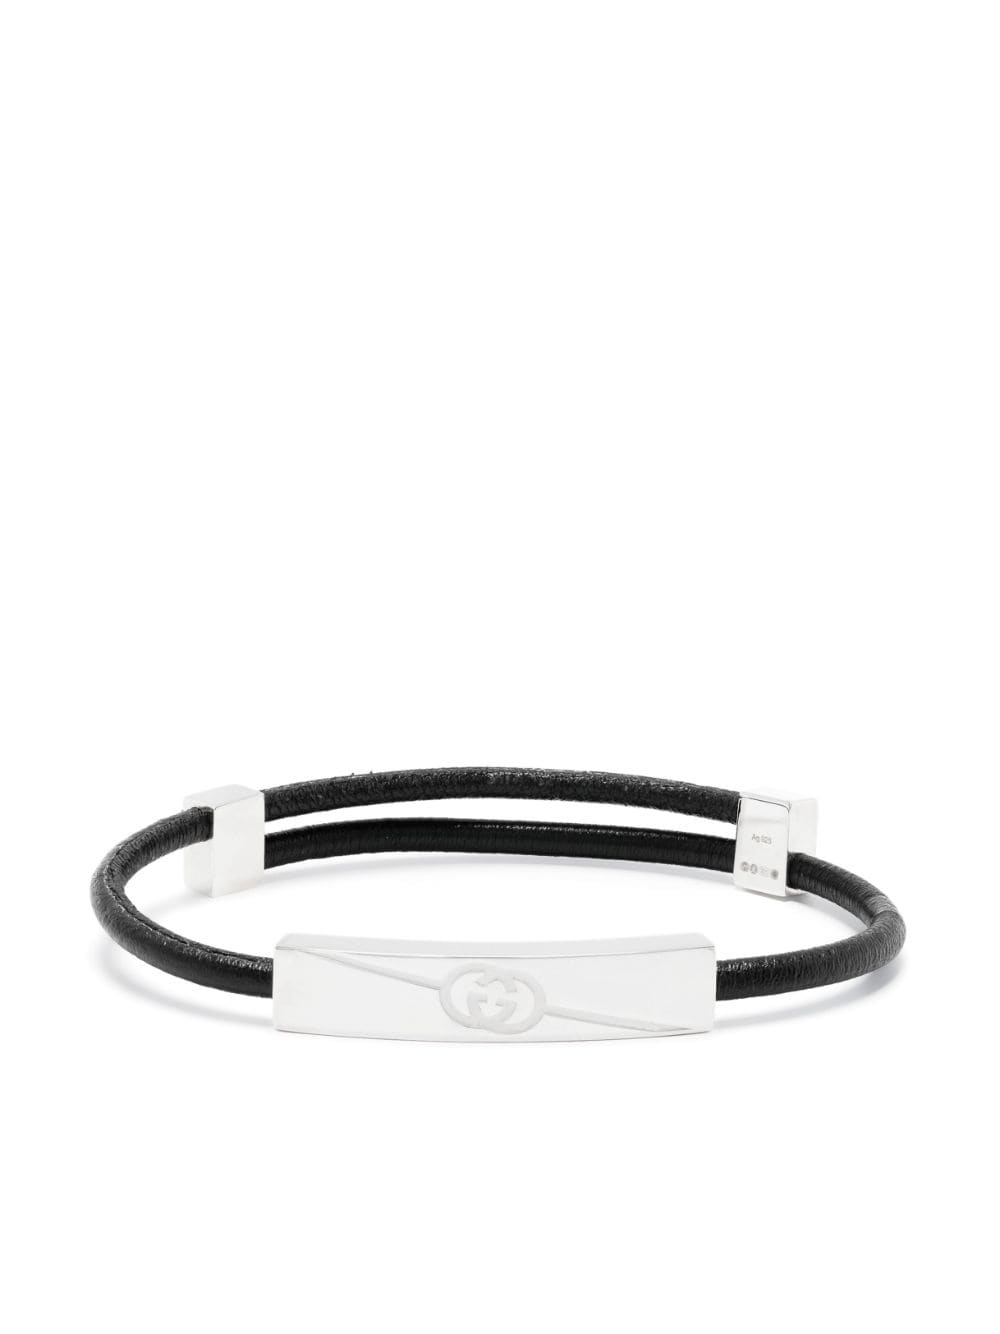 Gucci Interlocking G leather bracelet - Black von Gucci